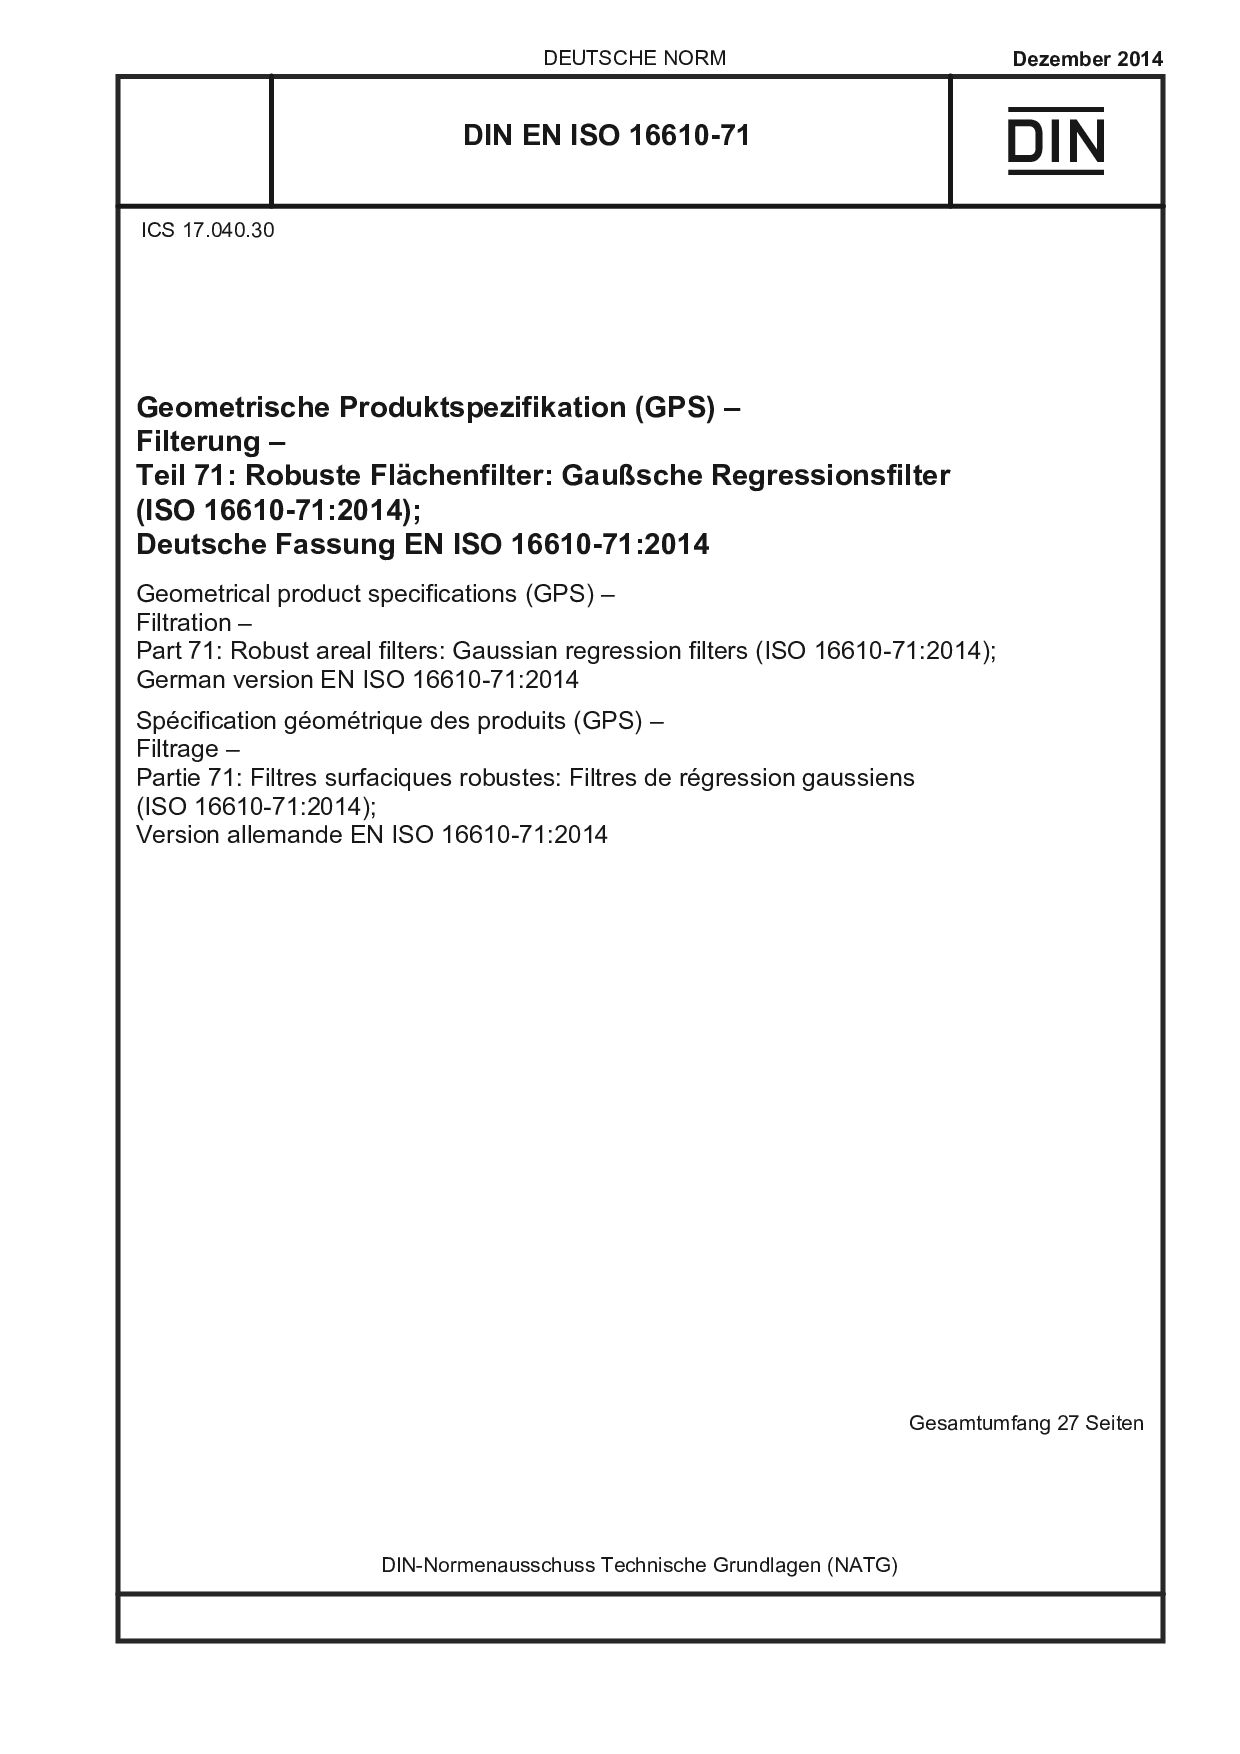 DIN EN ISO 16610-71:2014封面图